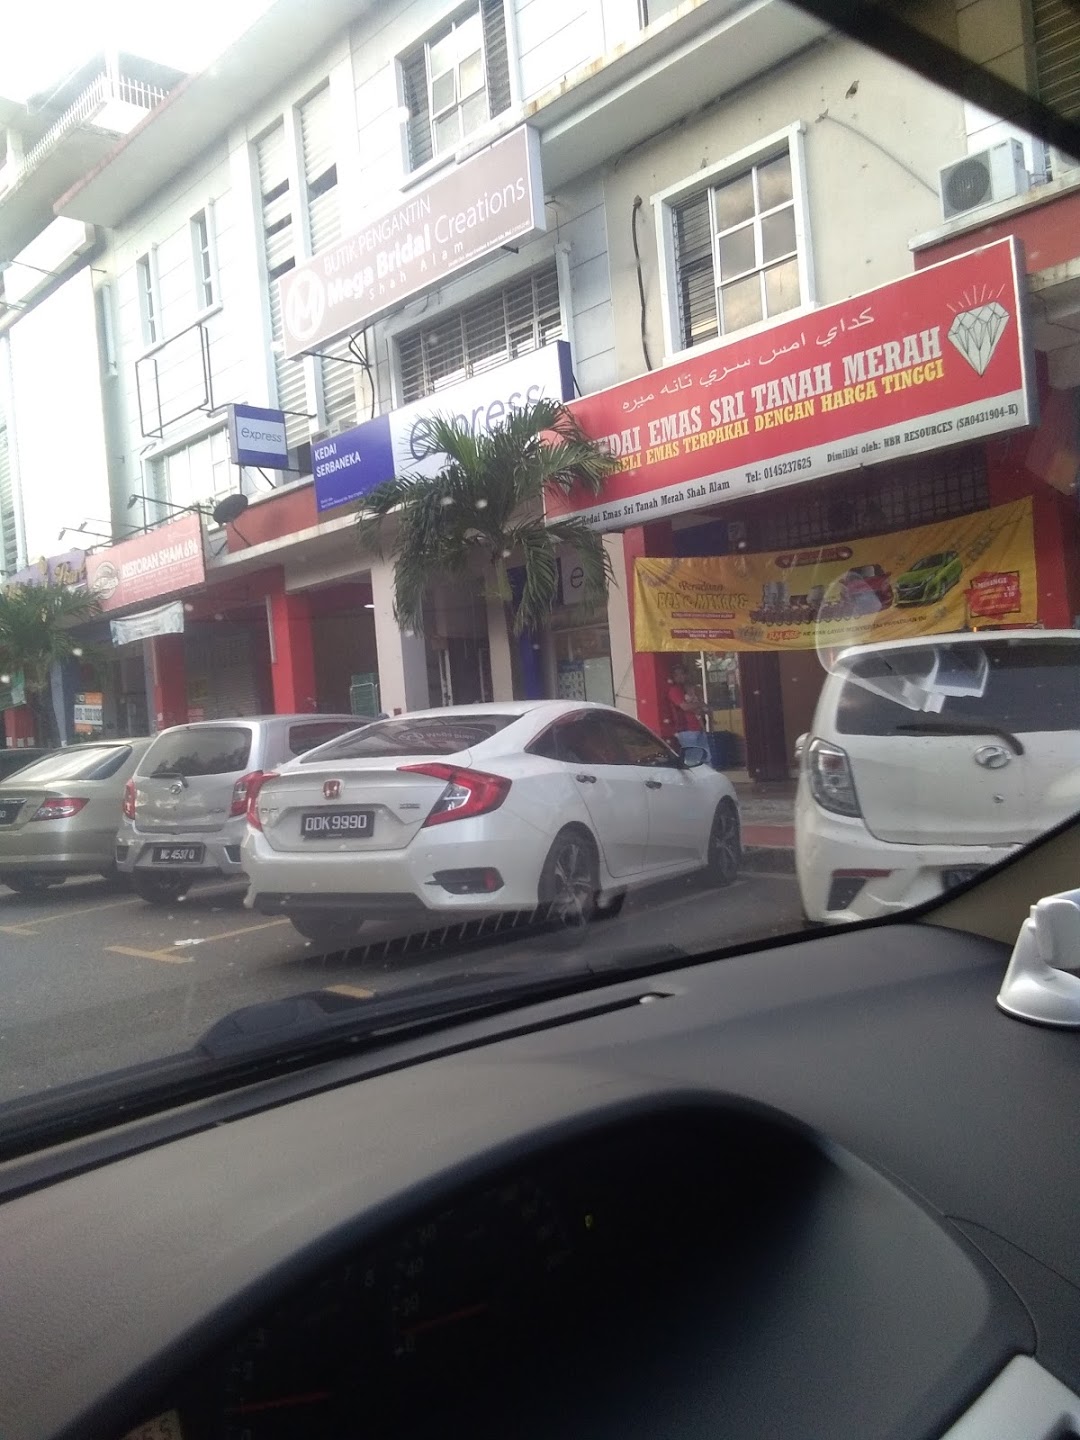 Kedai Emas Sri Tanah Merah Shah Alam Di Bandar Shah Alam